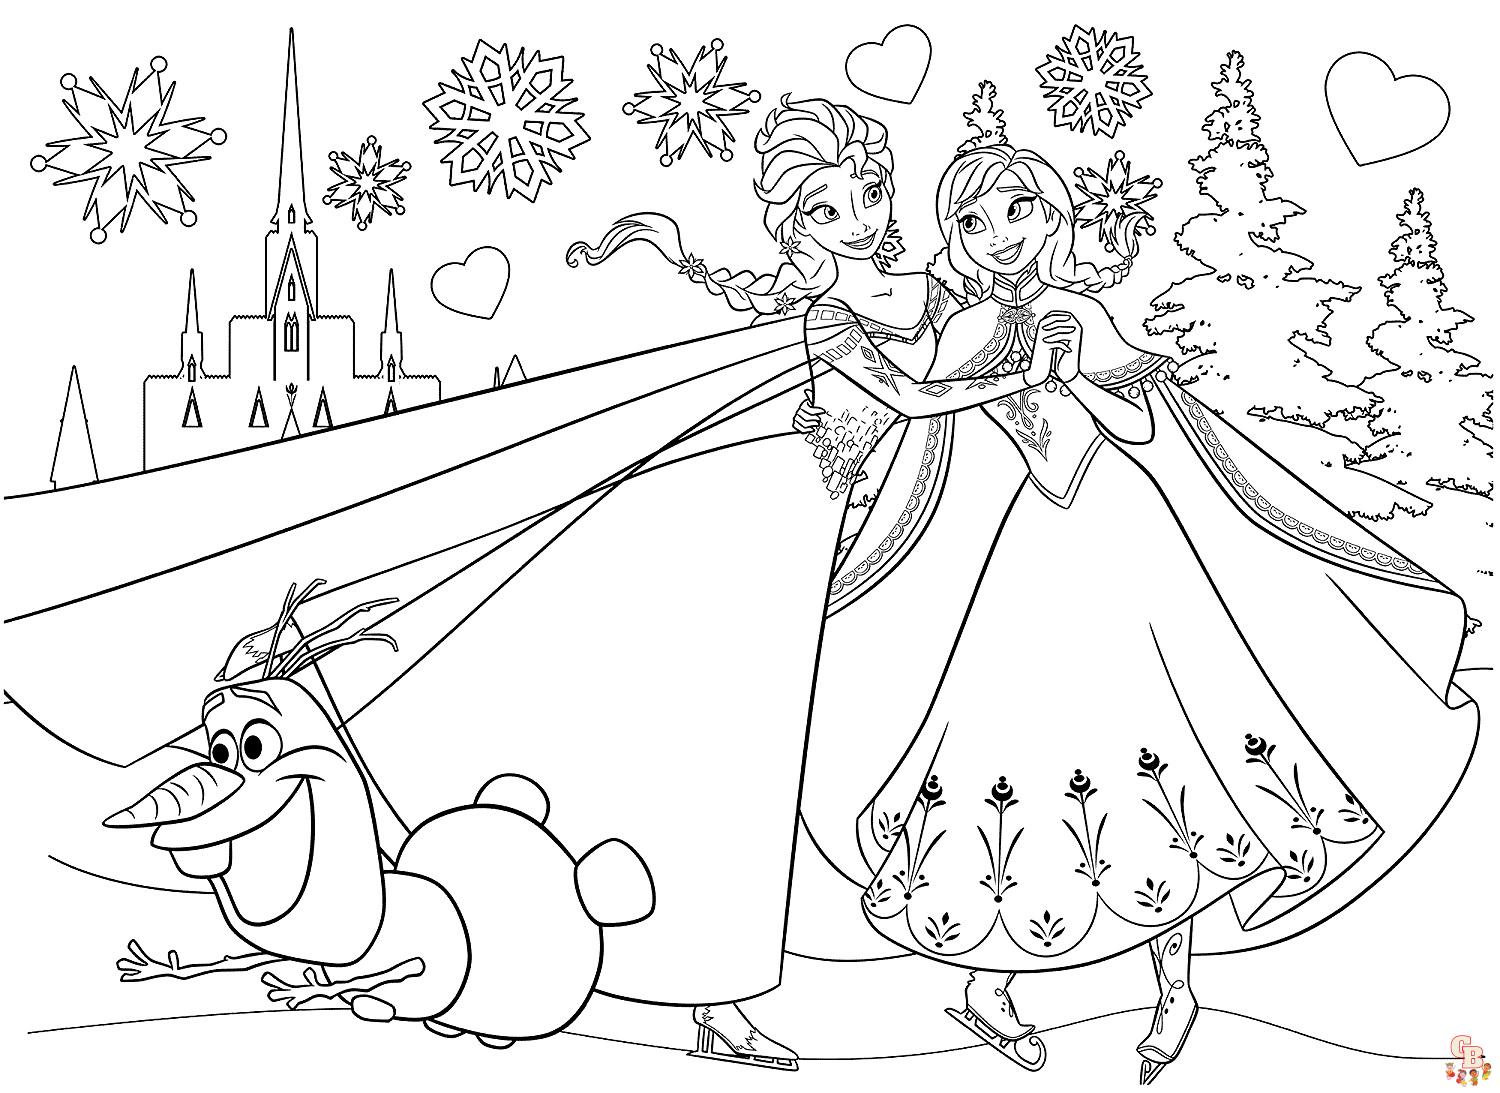 Frohe Weihnachten mit Elsa ausmalbilder zum ausdrucken 2